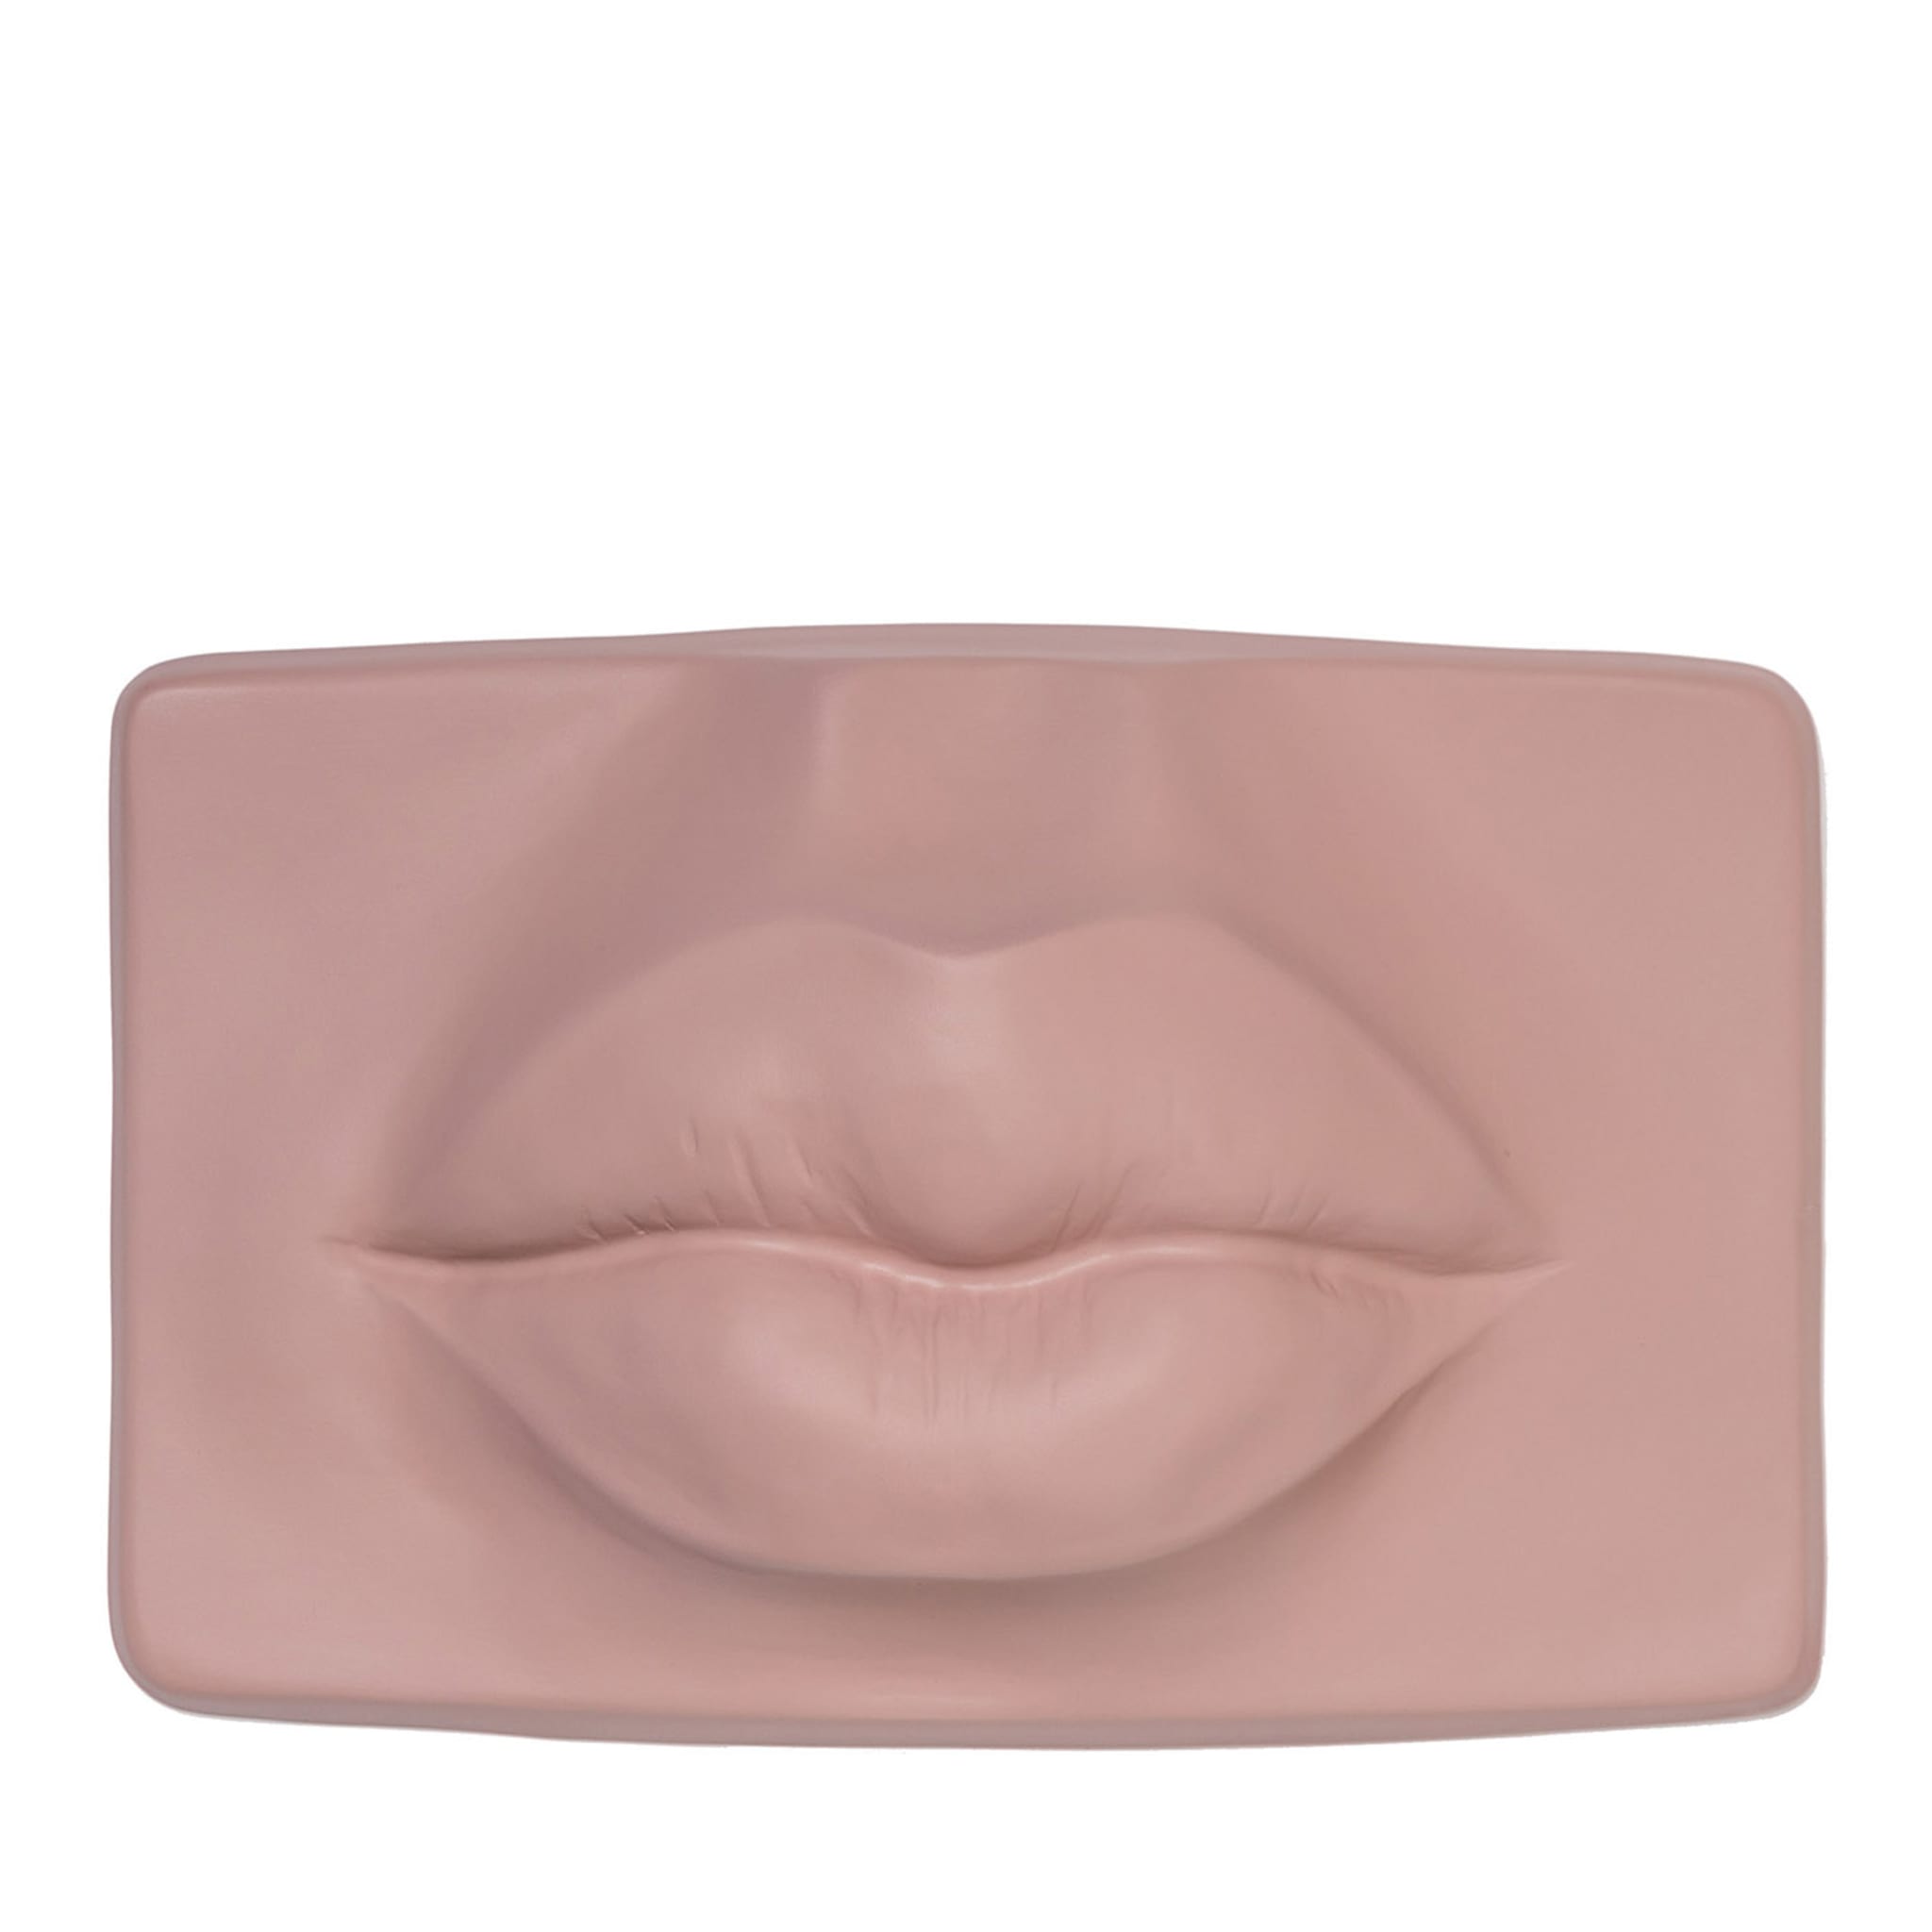 Lips Jolie Pink Sculpture - Main view